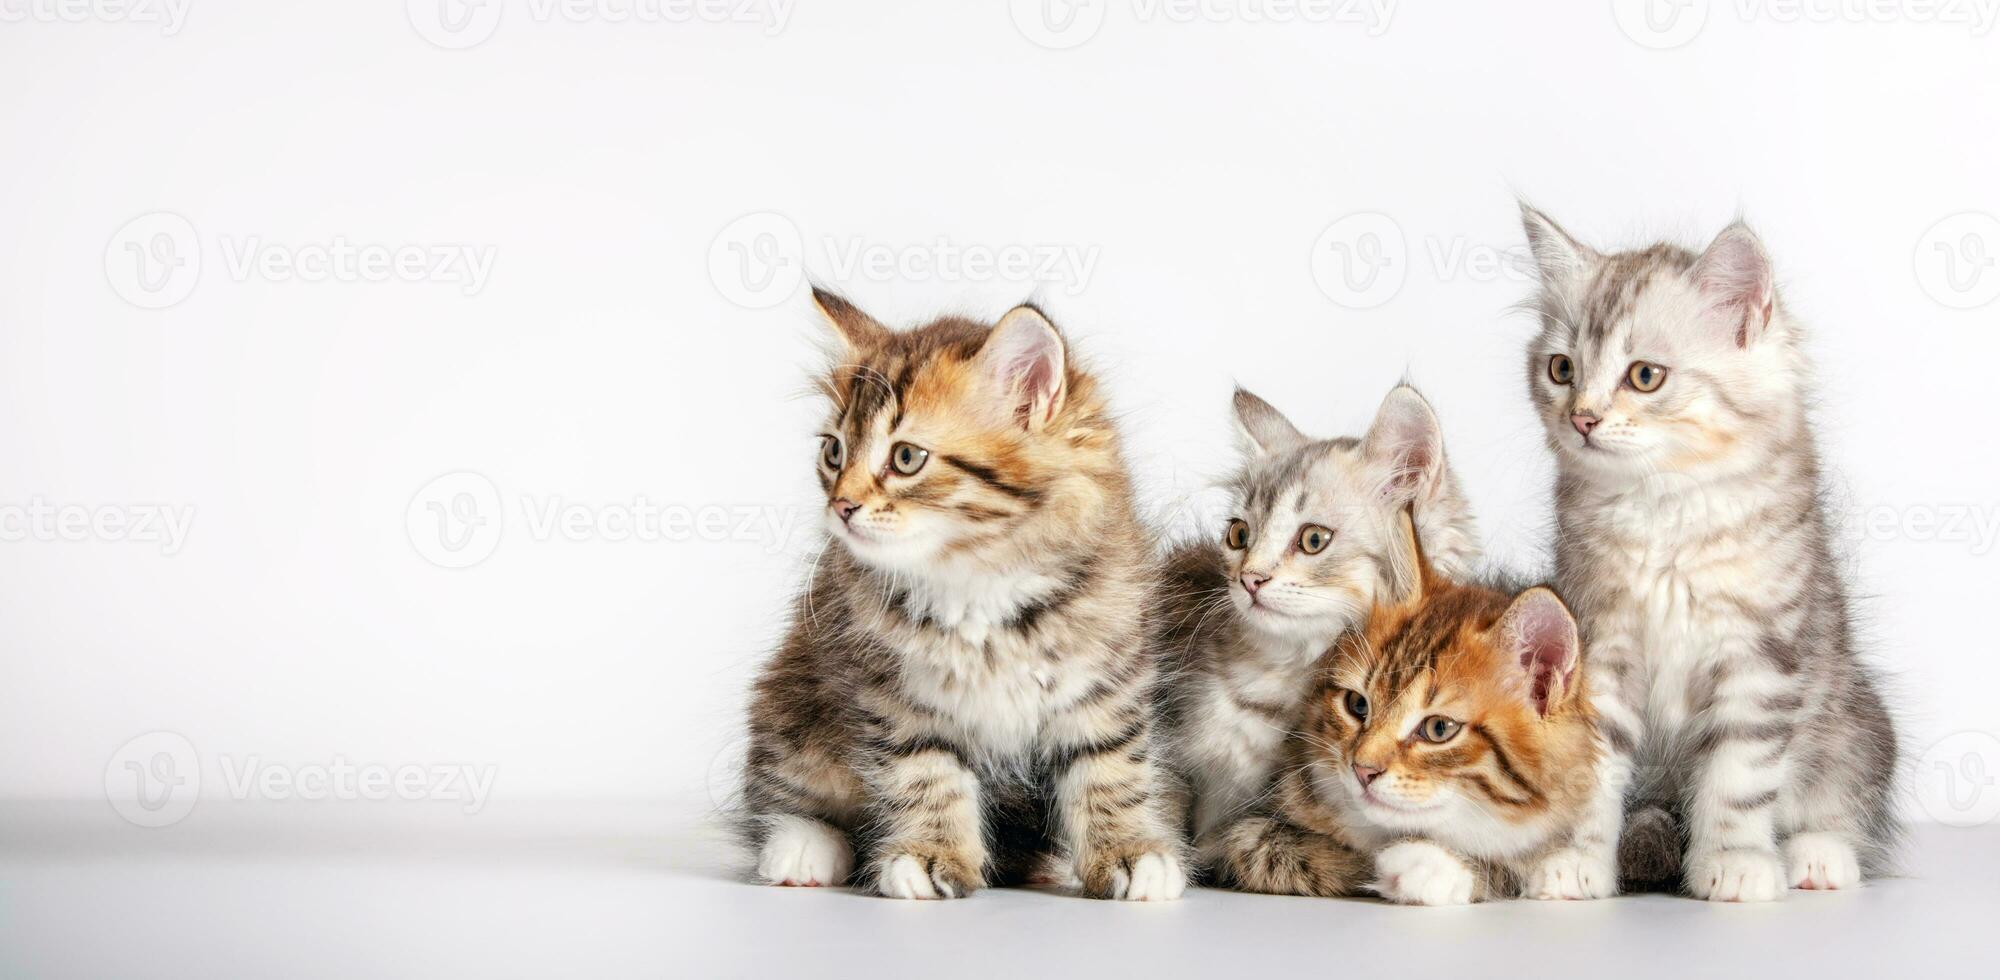 linda gatitos siberiano gato raza mirando a Copiar espacio en blanco foto